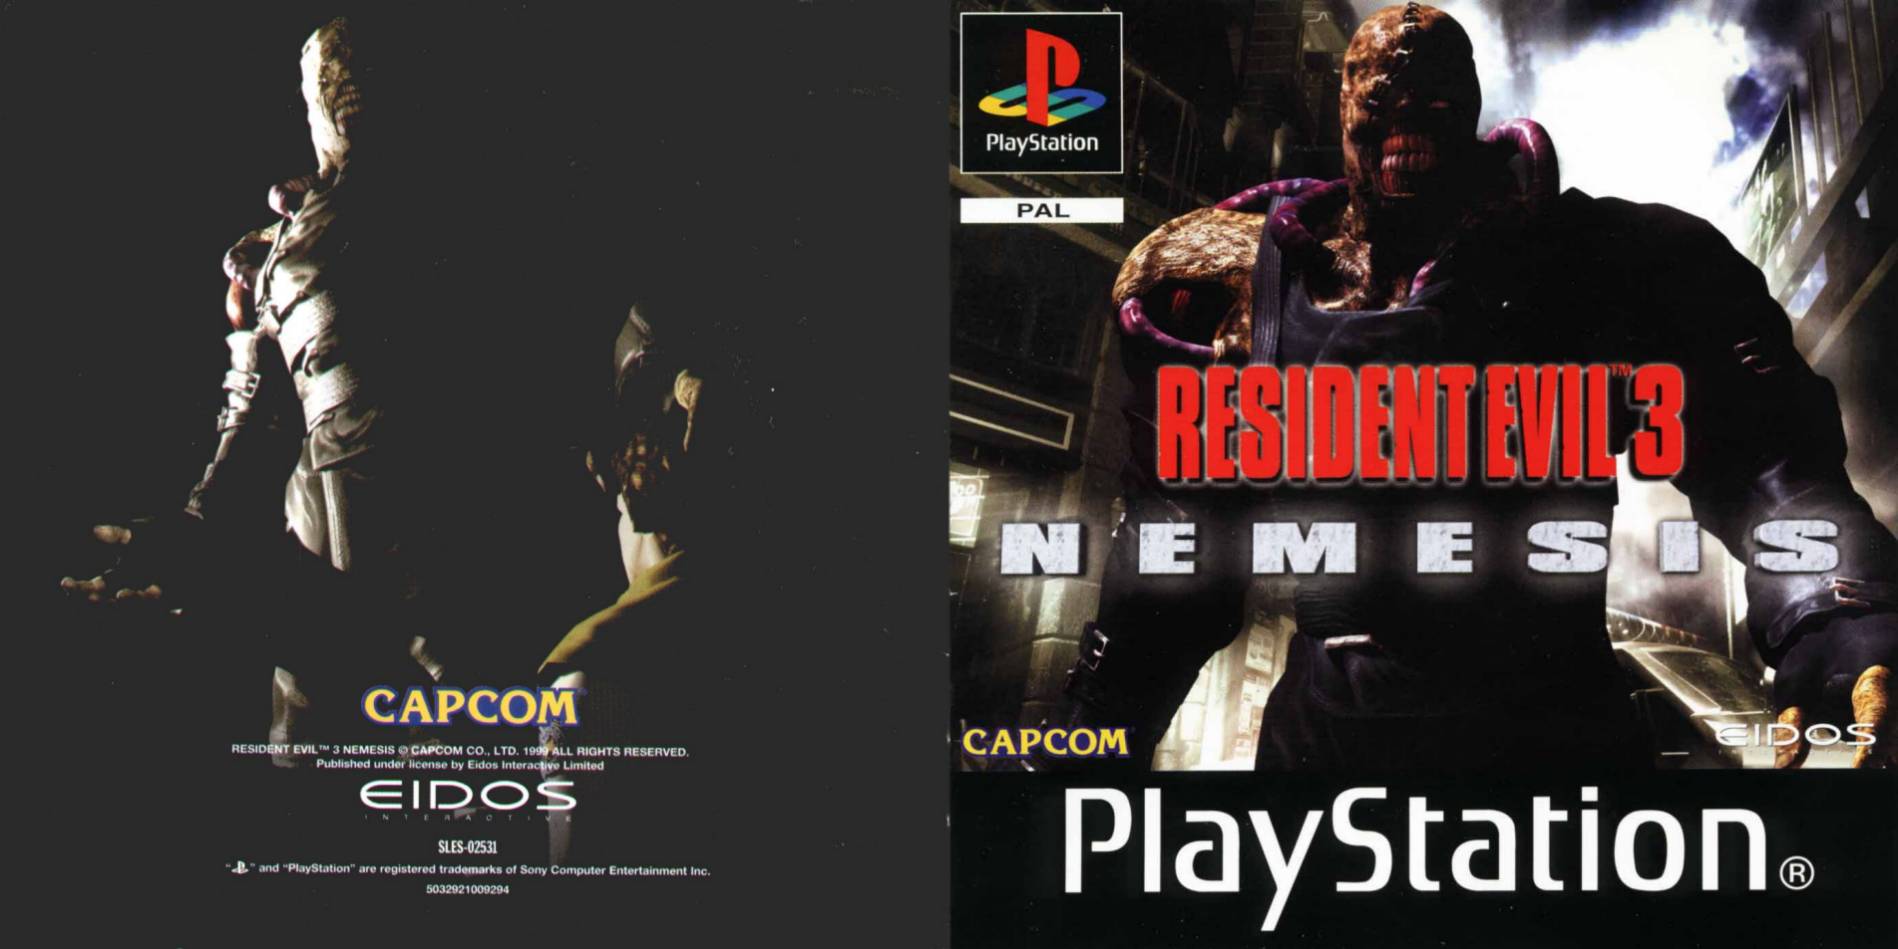 Resident evil 3 nemesis remake